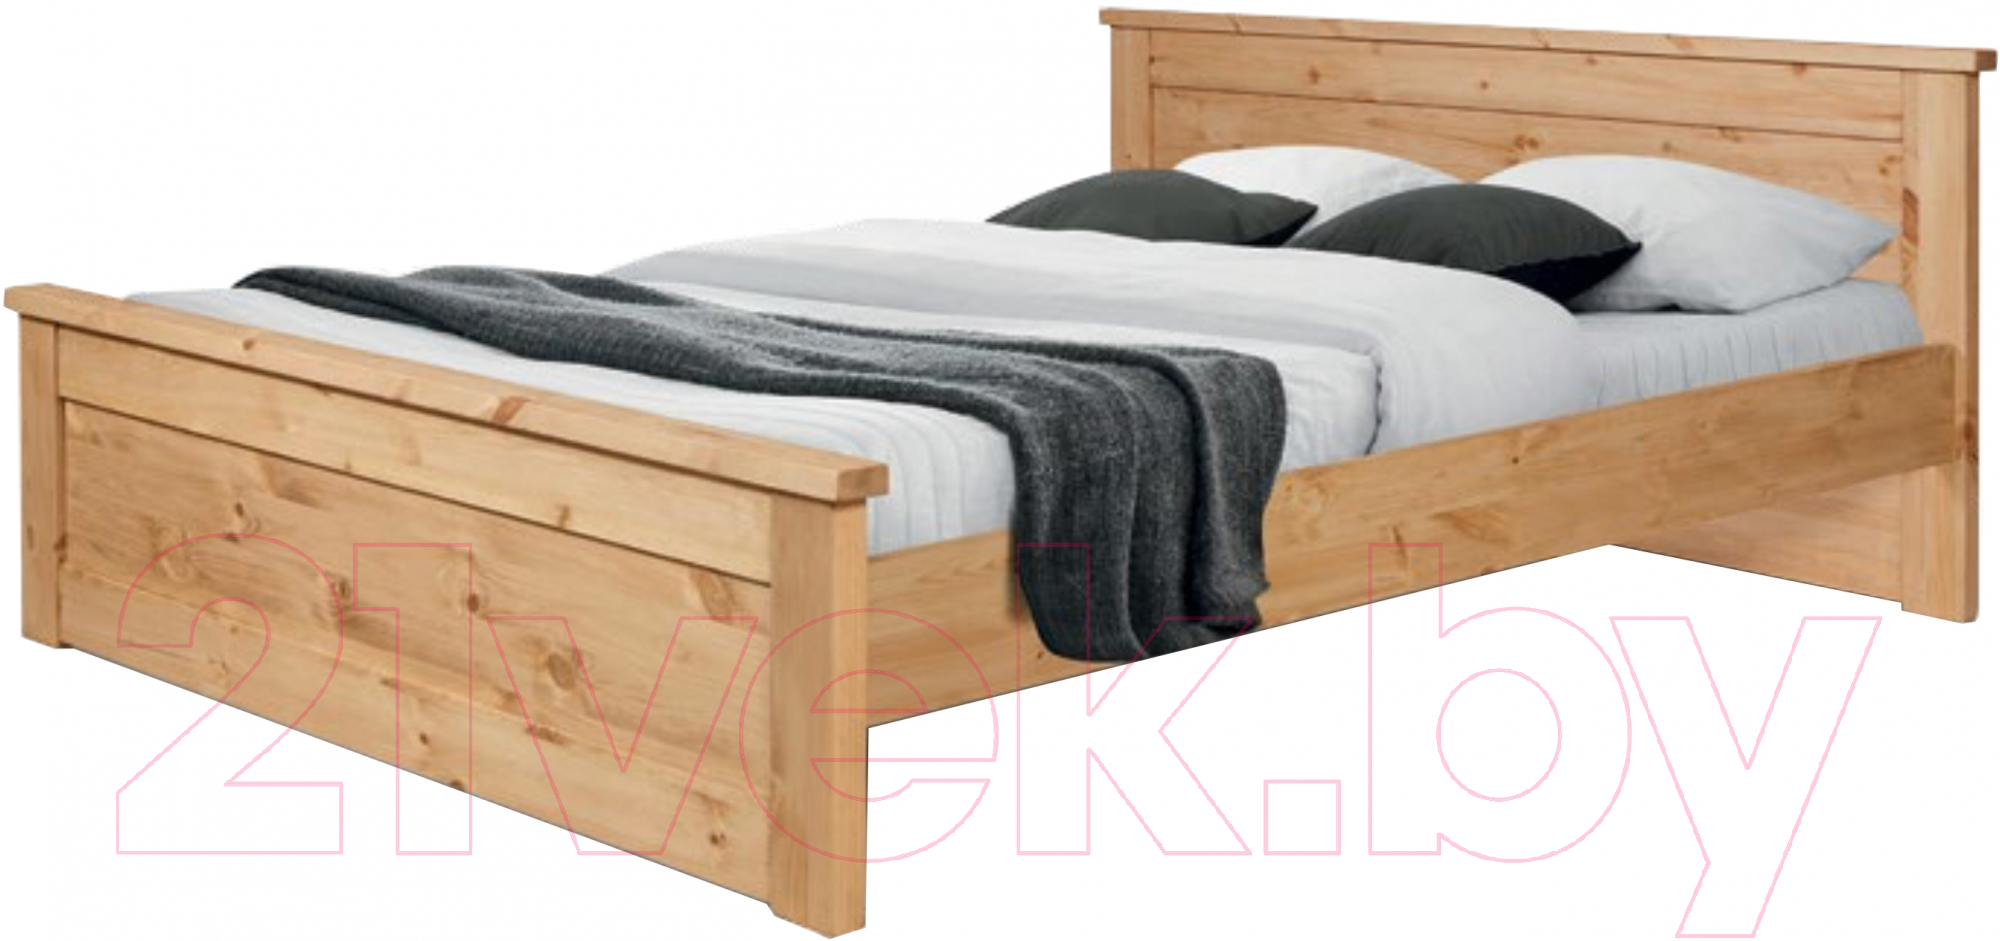 Полуторная кровать Kommodum 780x1520x2100 KLTN14